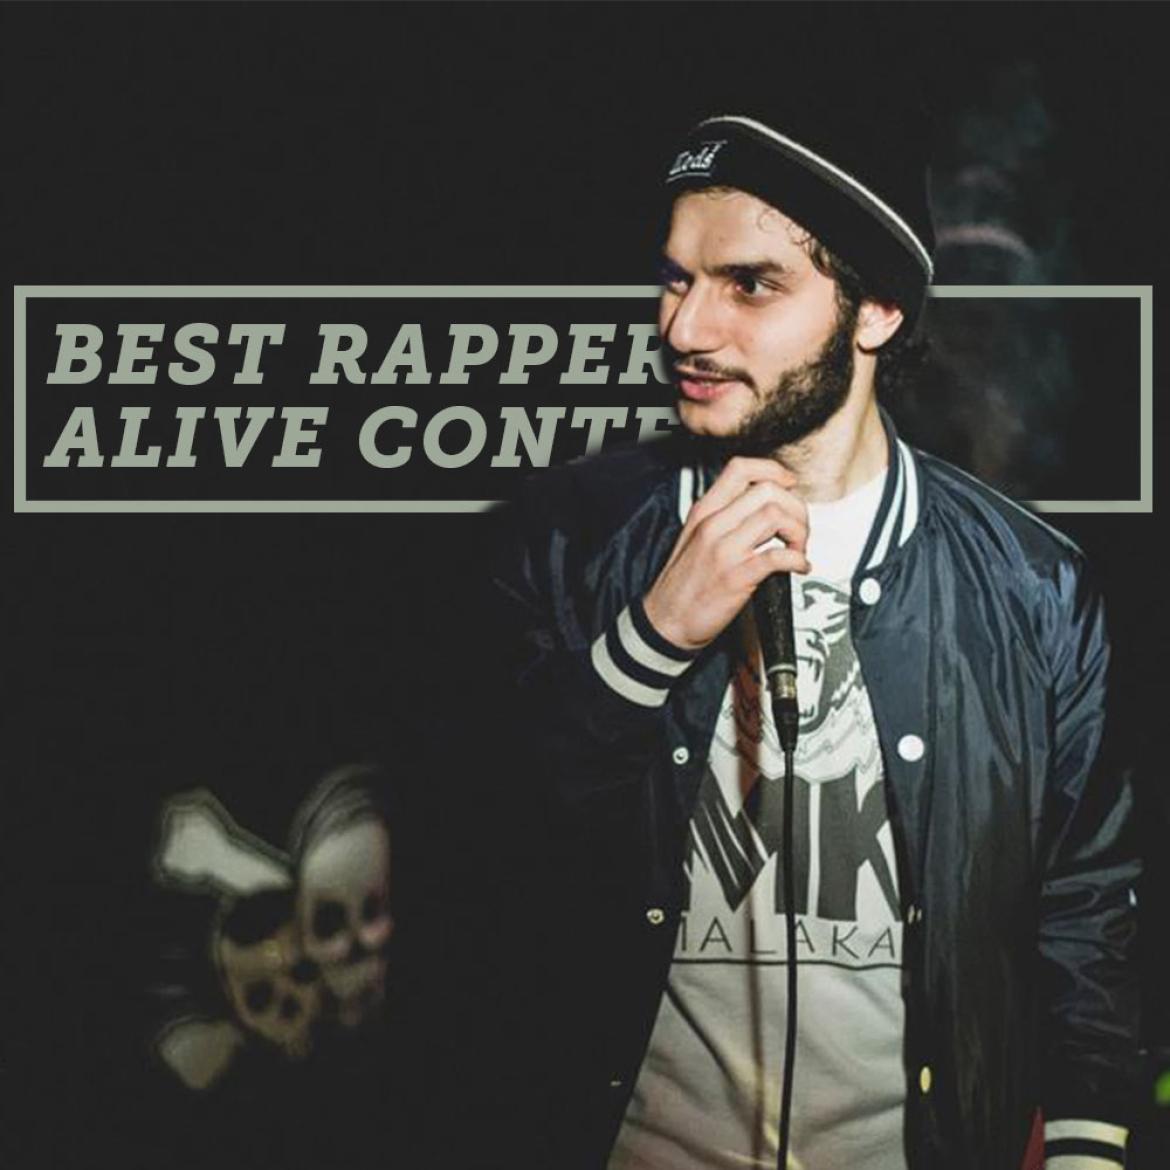 Malakai mit einem Mikrofon in der Hand, daneben steht als Schrift "Best Rapper Alive Contest"